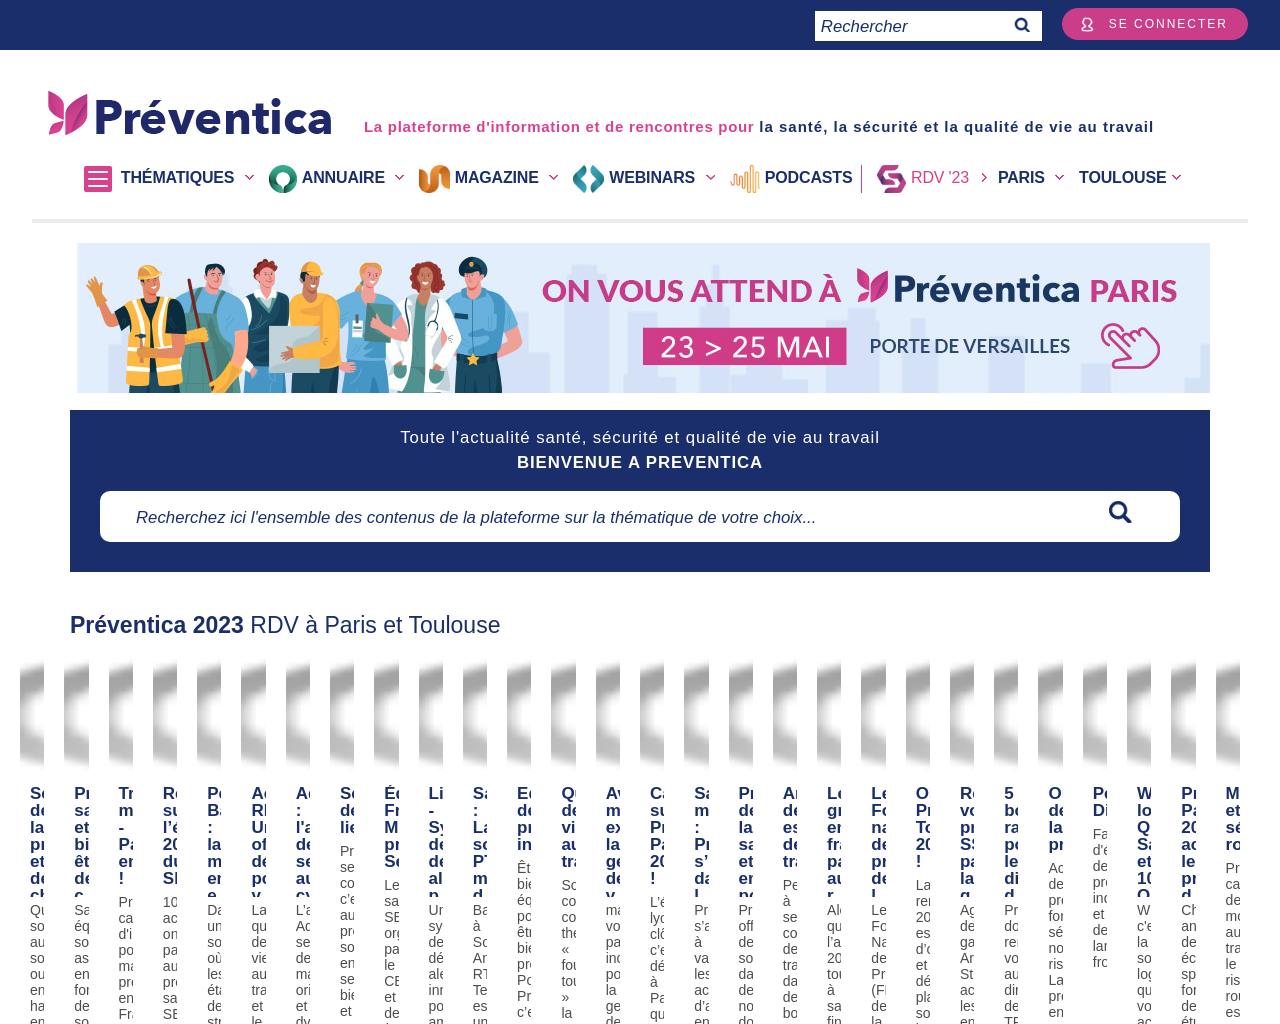 www.preventica.com